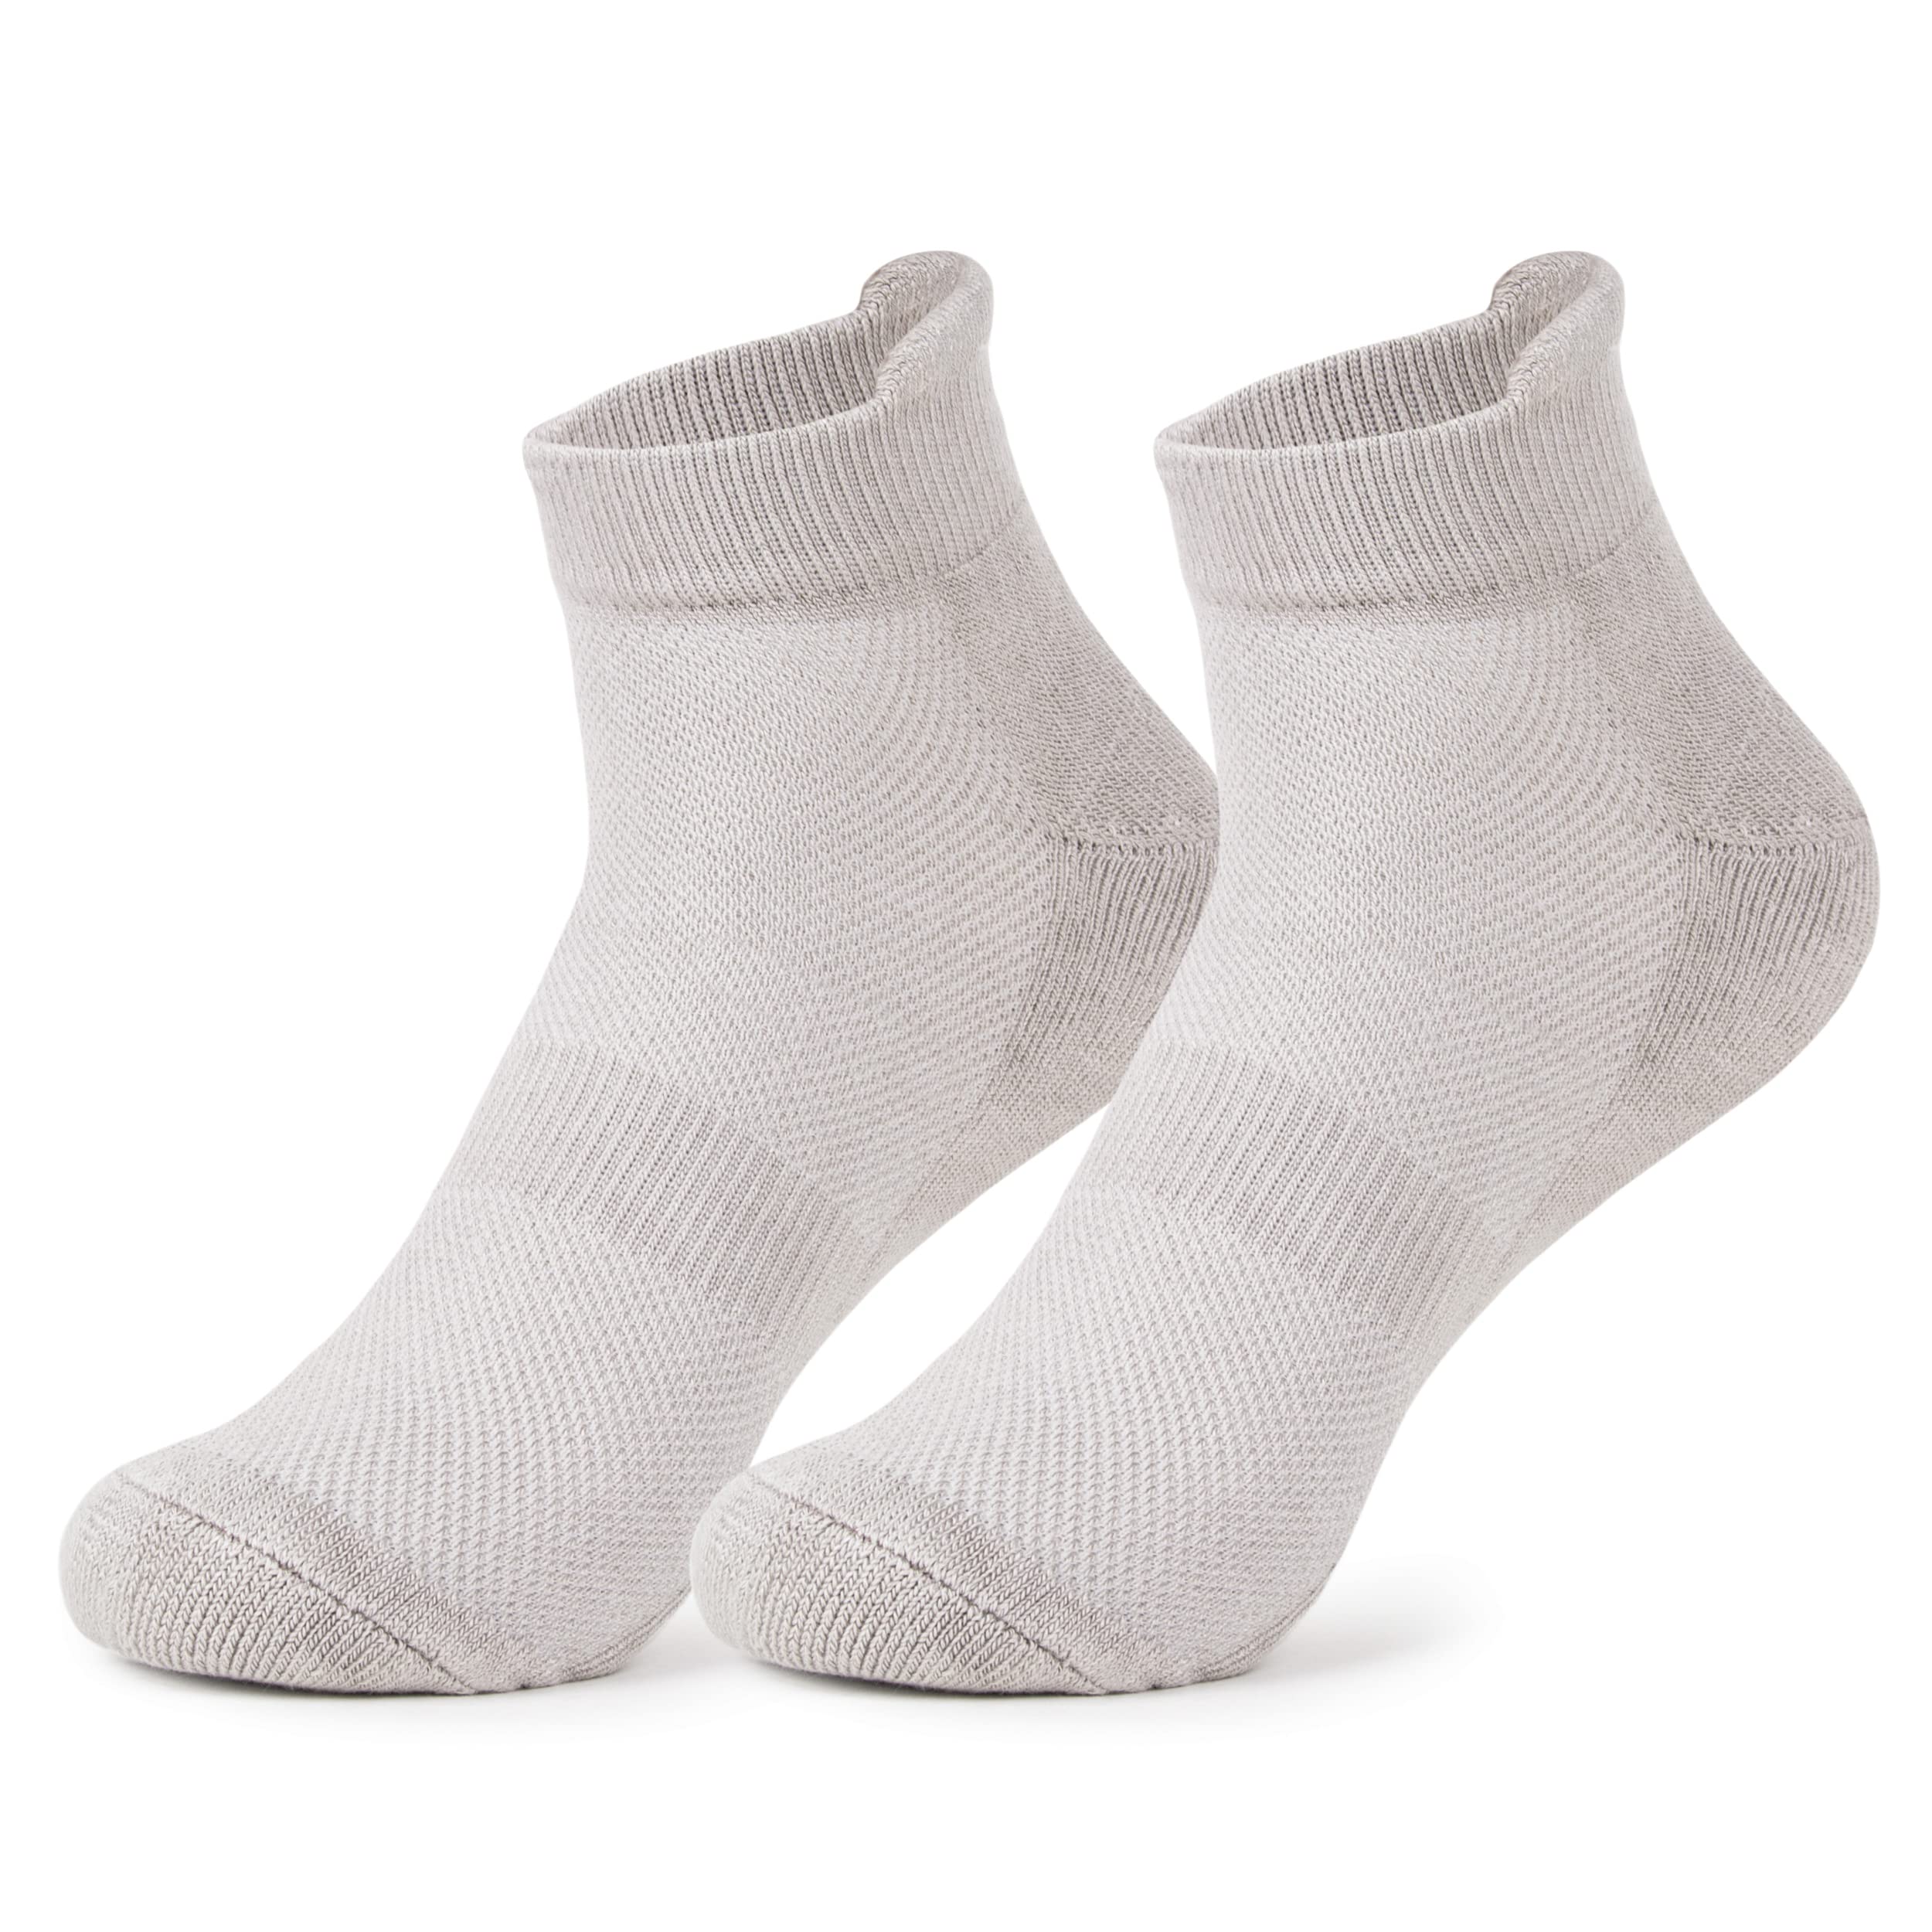 Mush Men's Ankle Length Rayon Socks (Pack Of 3) (AnkSocks123_Light Grey)